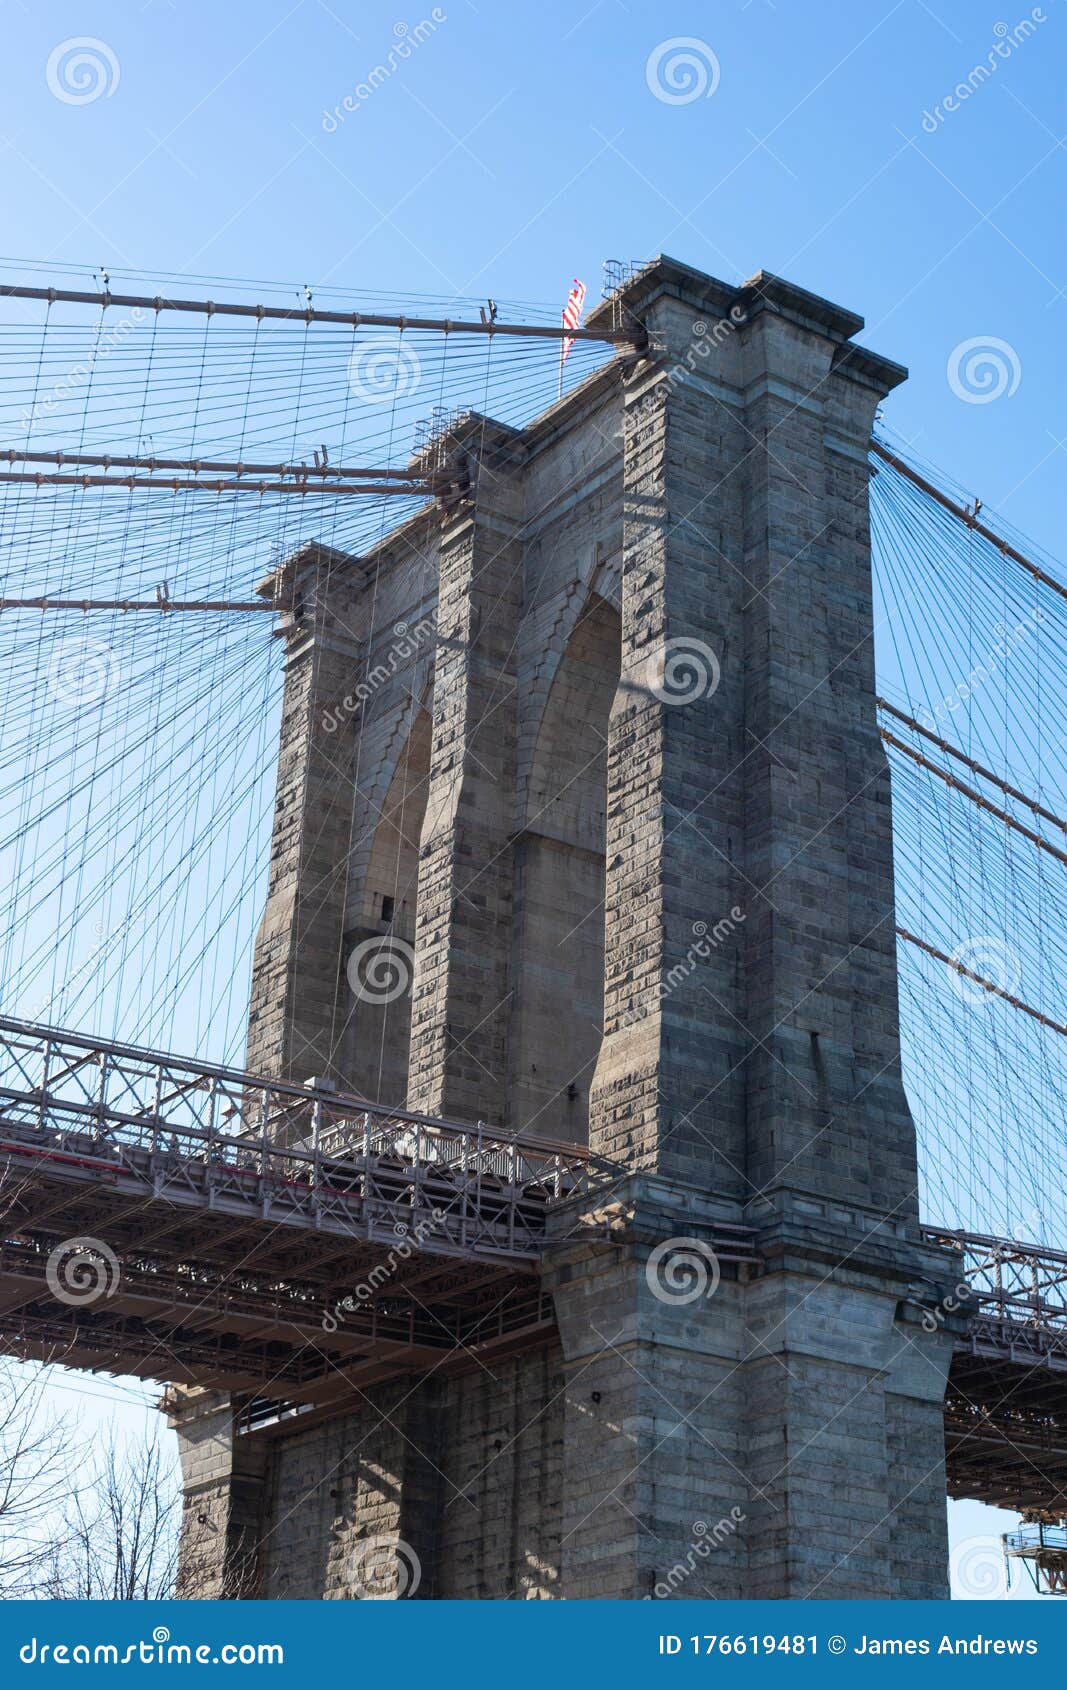 https://thumbs.dreamstime.com/z/arcos-en-el-puente-de-brooklyn-vistos-desde-dumbo-la-ciudad-nueva-york-mirando-hacia-arriba-los-antiguos-piedra-del-visto-con-un-176619481.jpg